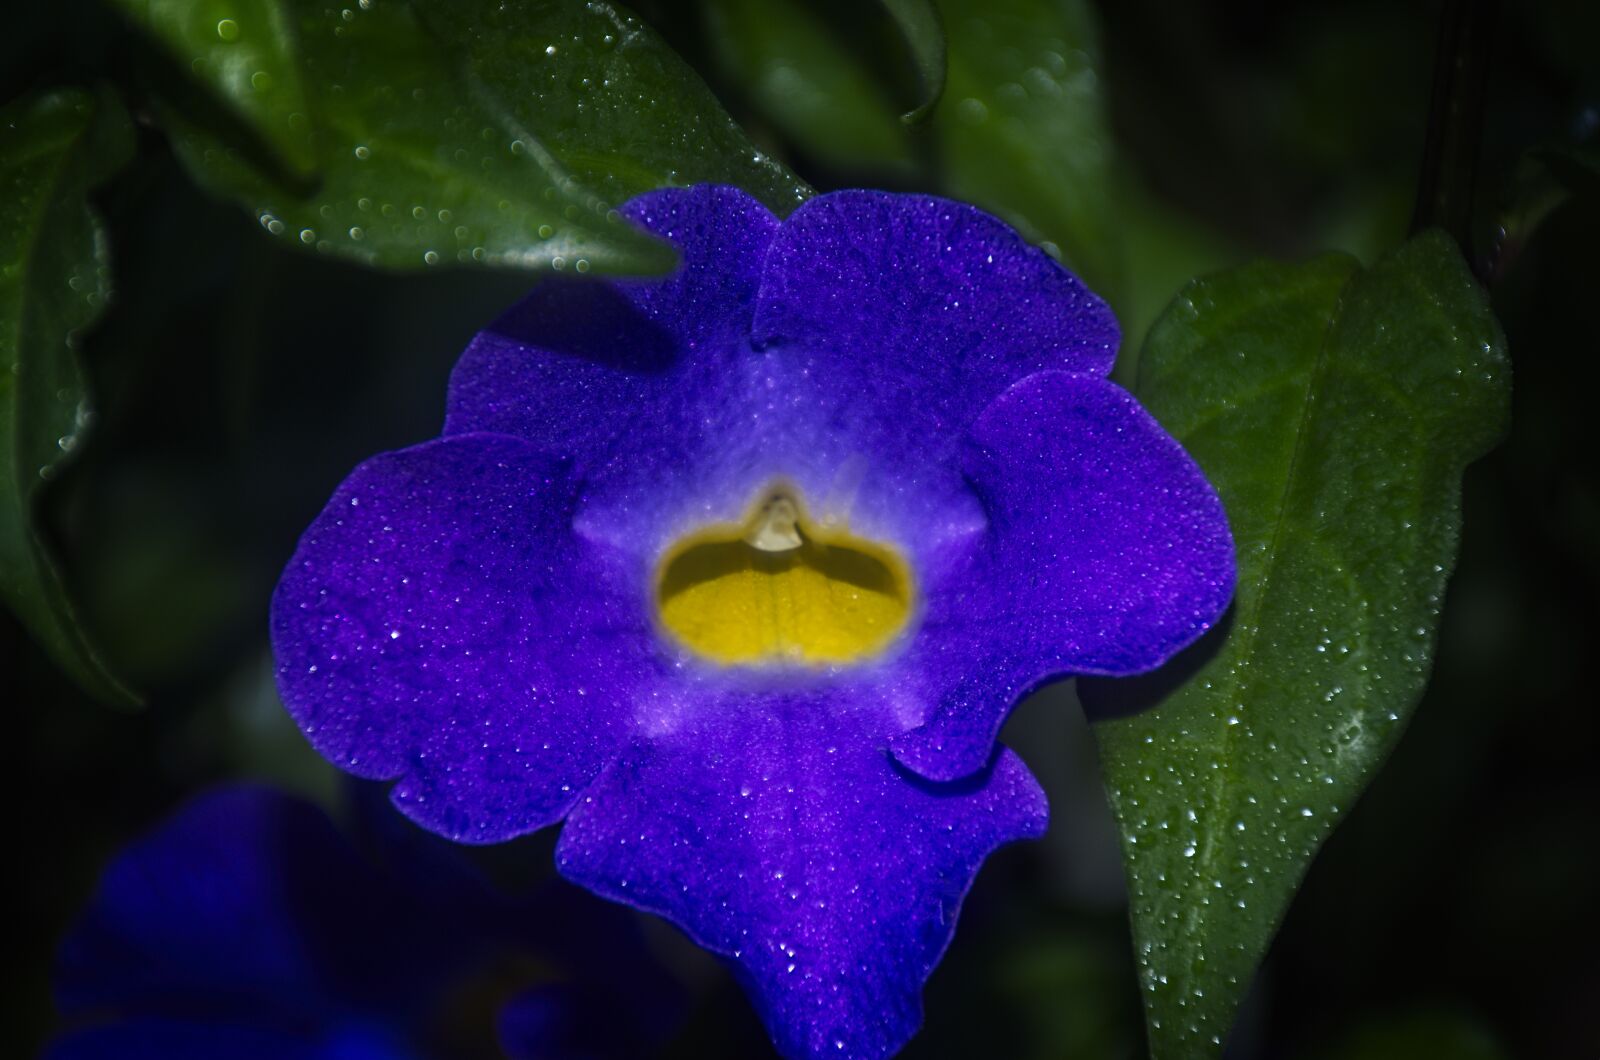 Nikon AF-S DX Nikkor 18-140mm F3.5-5.6G ED VR sample photo. Flower, purple, violet photography